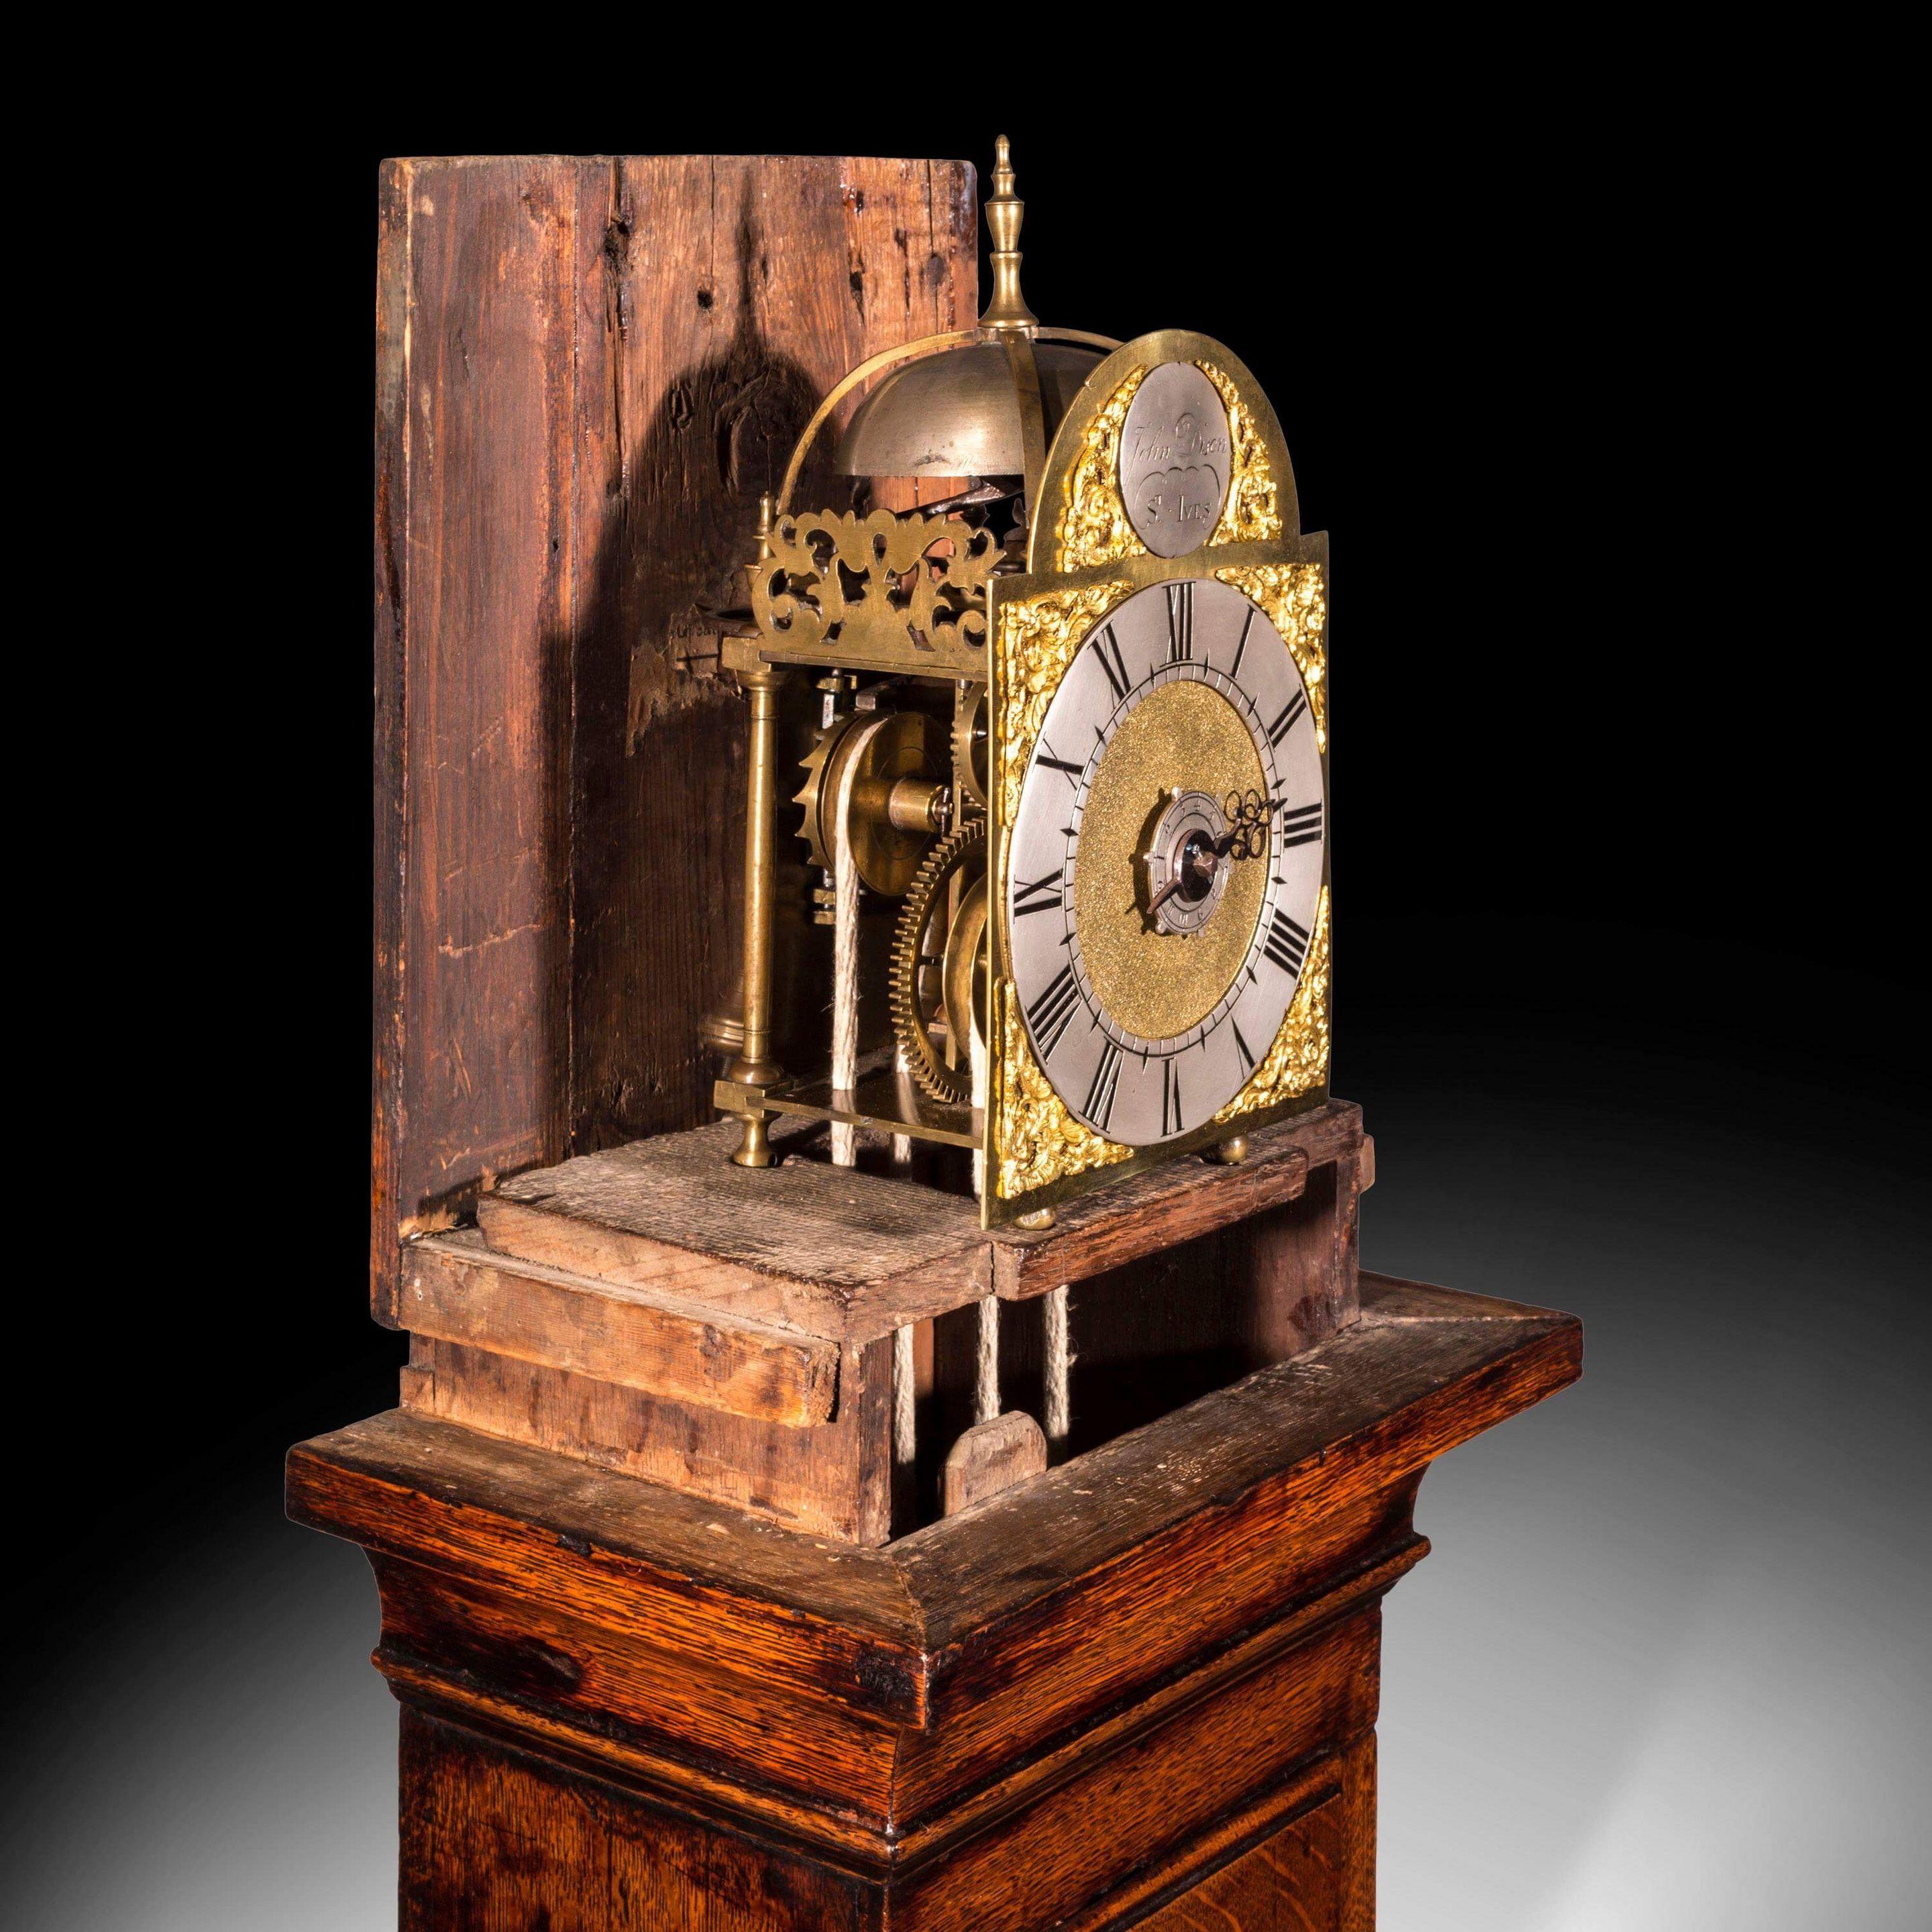 Il est fort probable que cette charmante lanterne d'alarme à crochets et à pointes, datant d'environ 1750, ait été commandée ou simplement achetée pour avoir son propre boîtier sur mesure. La caisse a sa planche de siège d'origine avec des